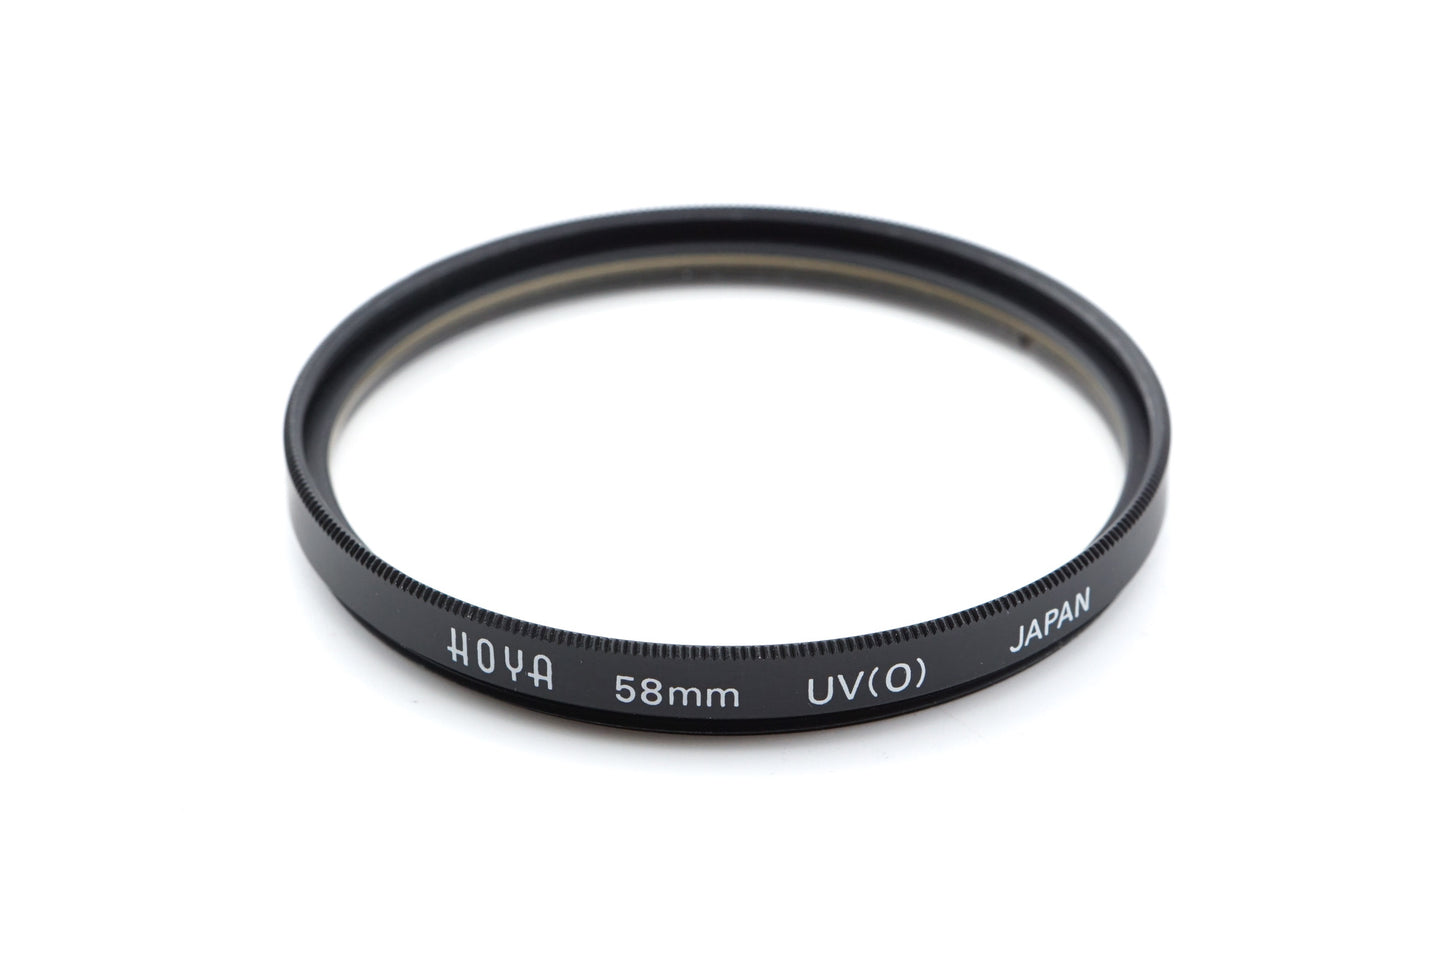 Hoya 58mm UV(O) Filter - Accessory